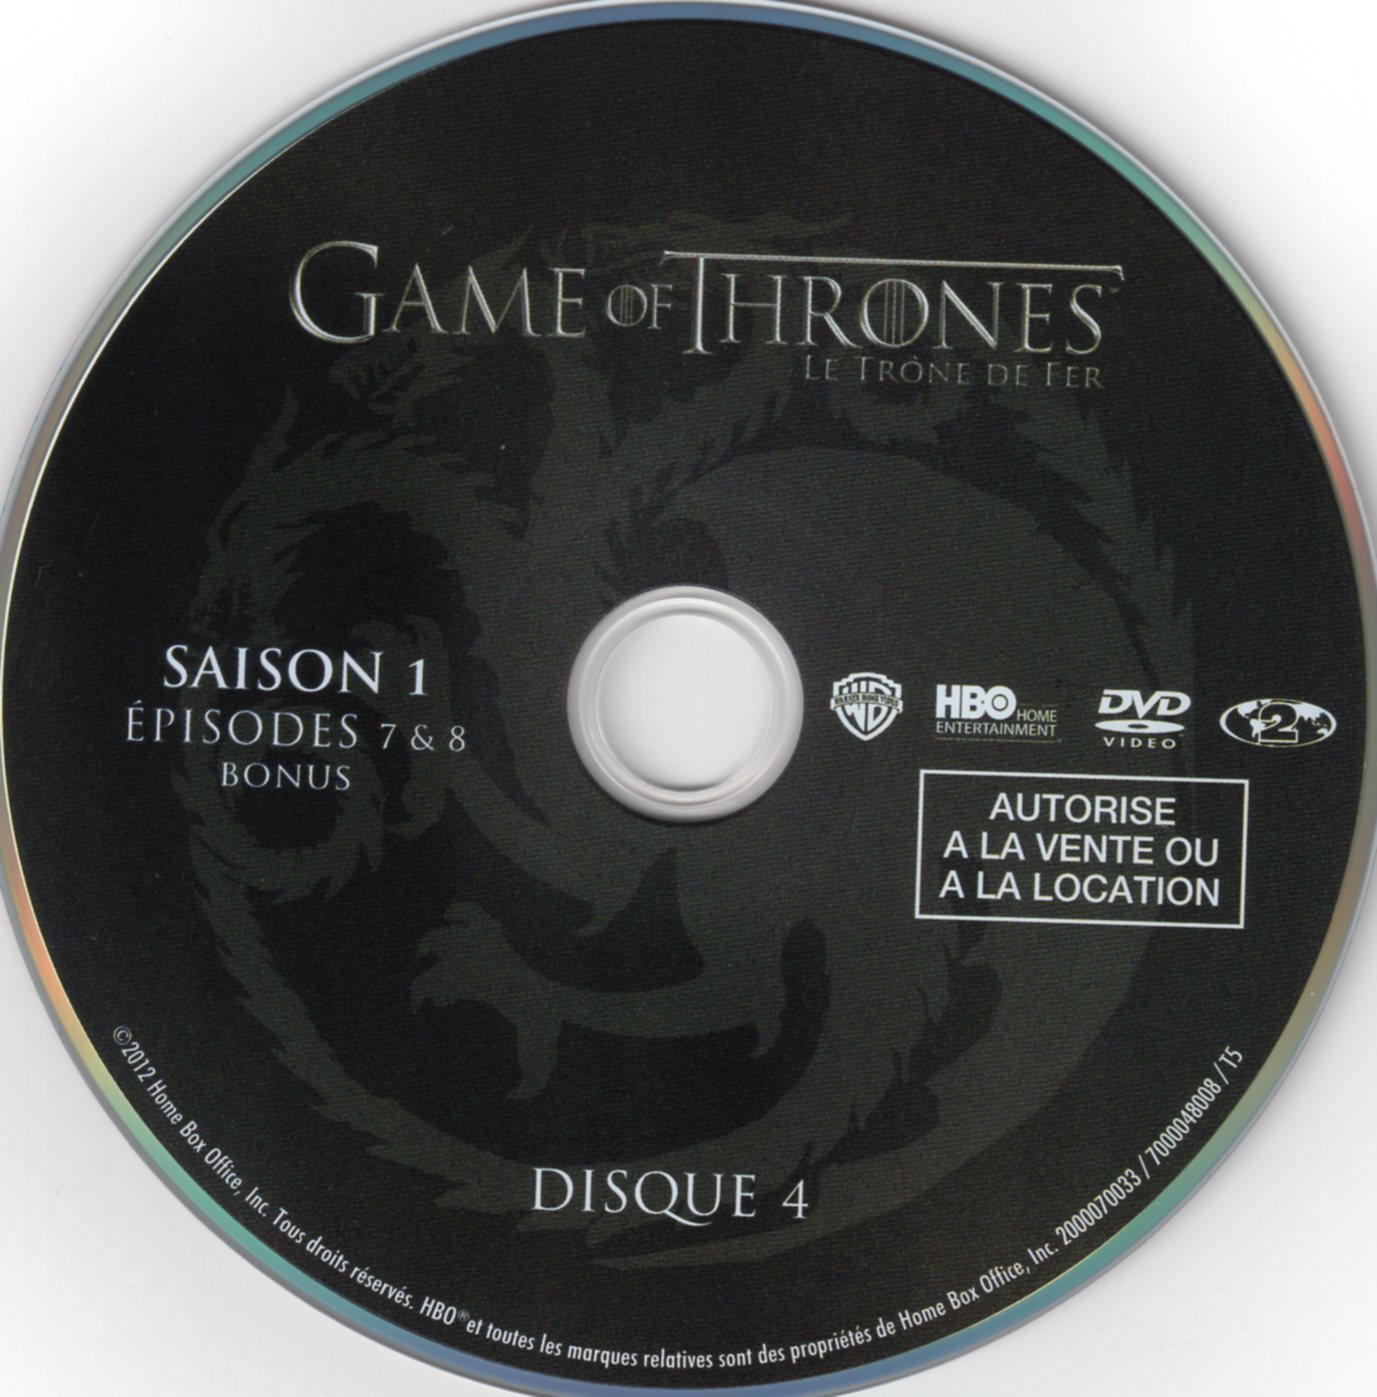 Game of thrones (le trone de fer) Saison 1 DVD 4